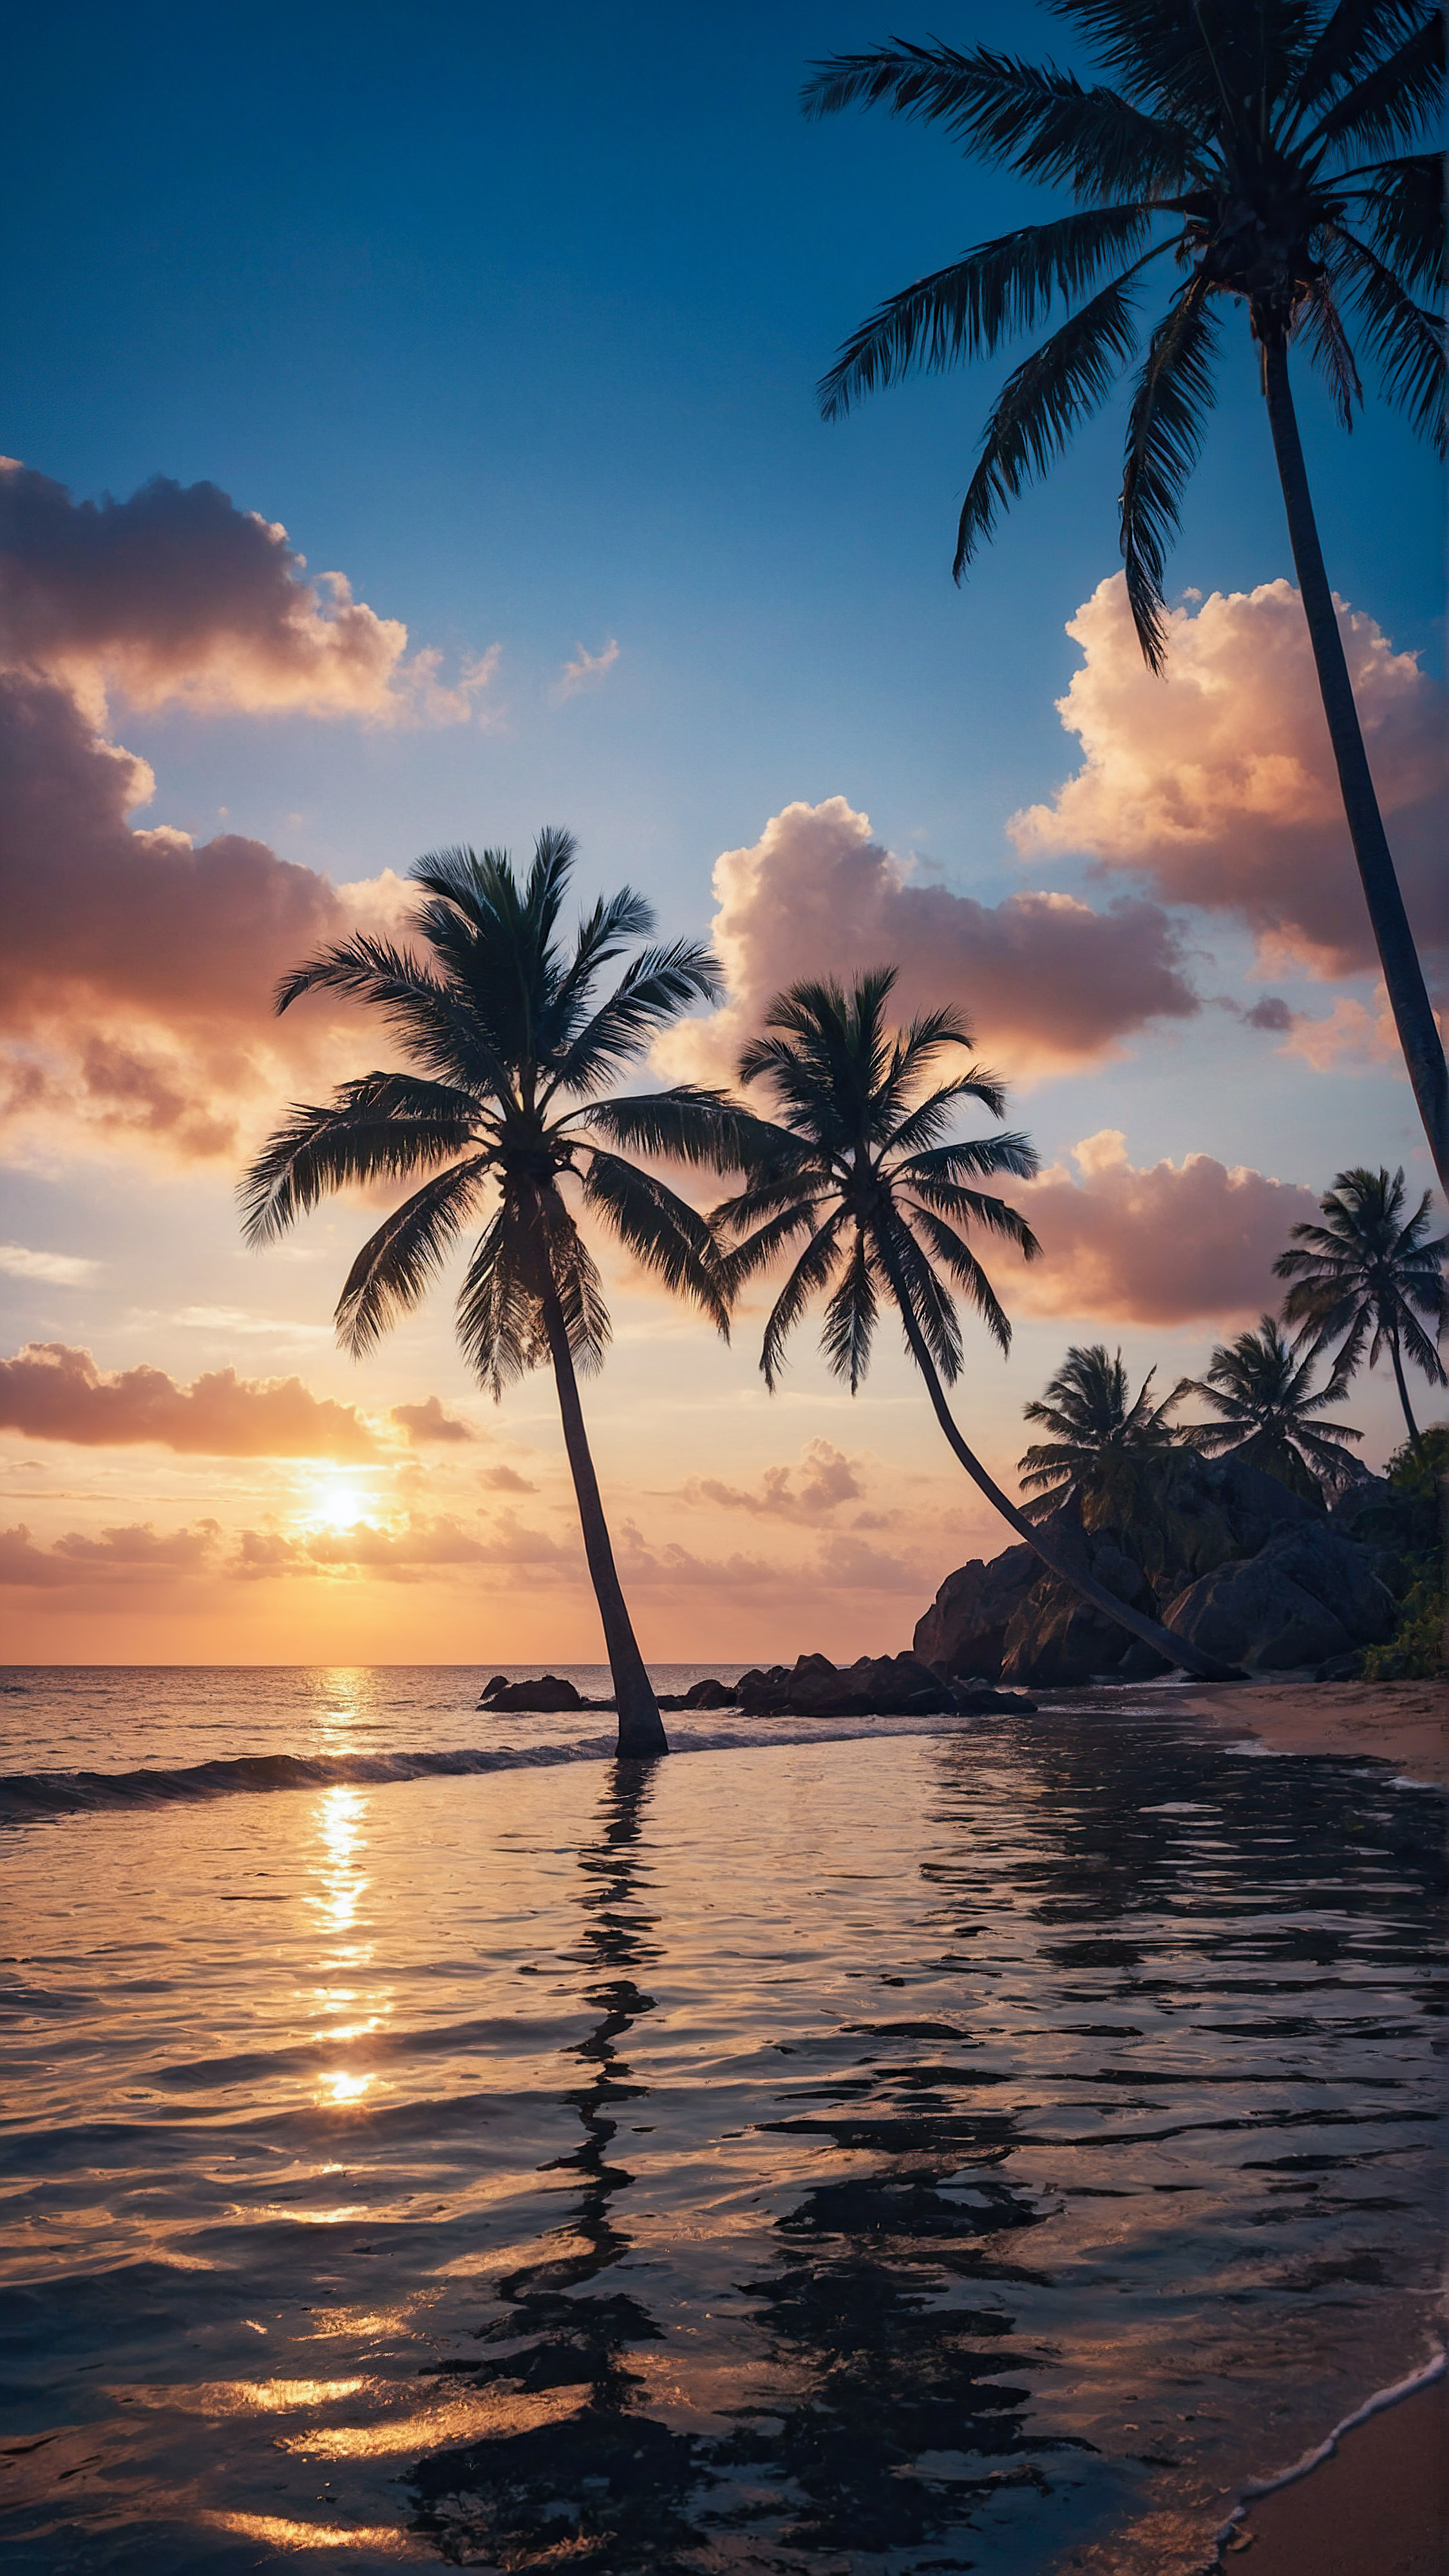 Profitez de la beauté et du style de notre fond d'écran iPhone présentant un coucher de soleil serein sur une plage tropicale, où la silhouette des palmiers est mise en valeur contre les teintes chaudes du ciel se reflétant sur les eaux calmes. 